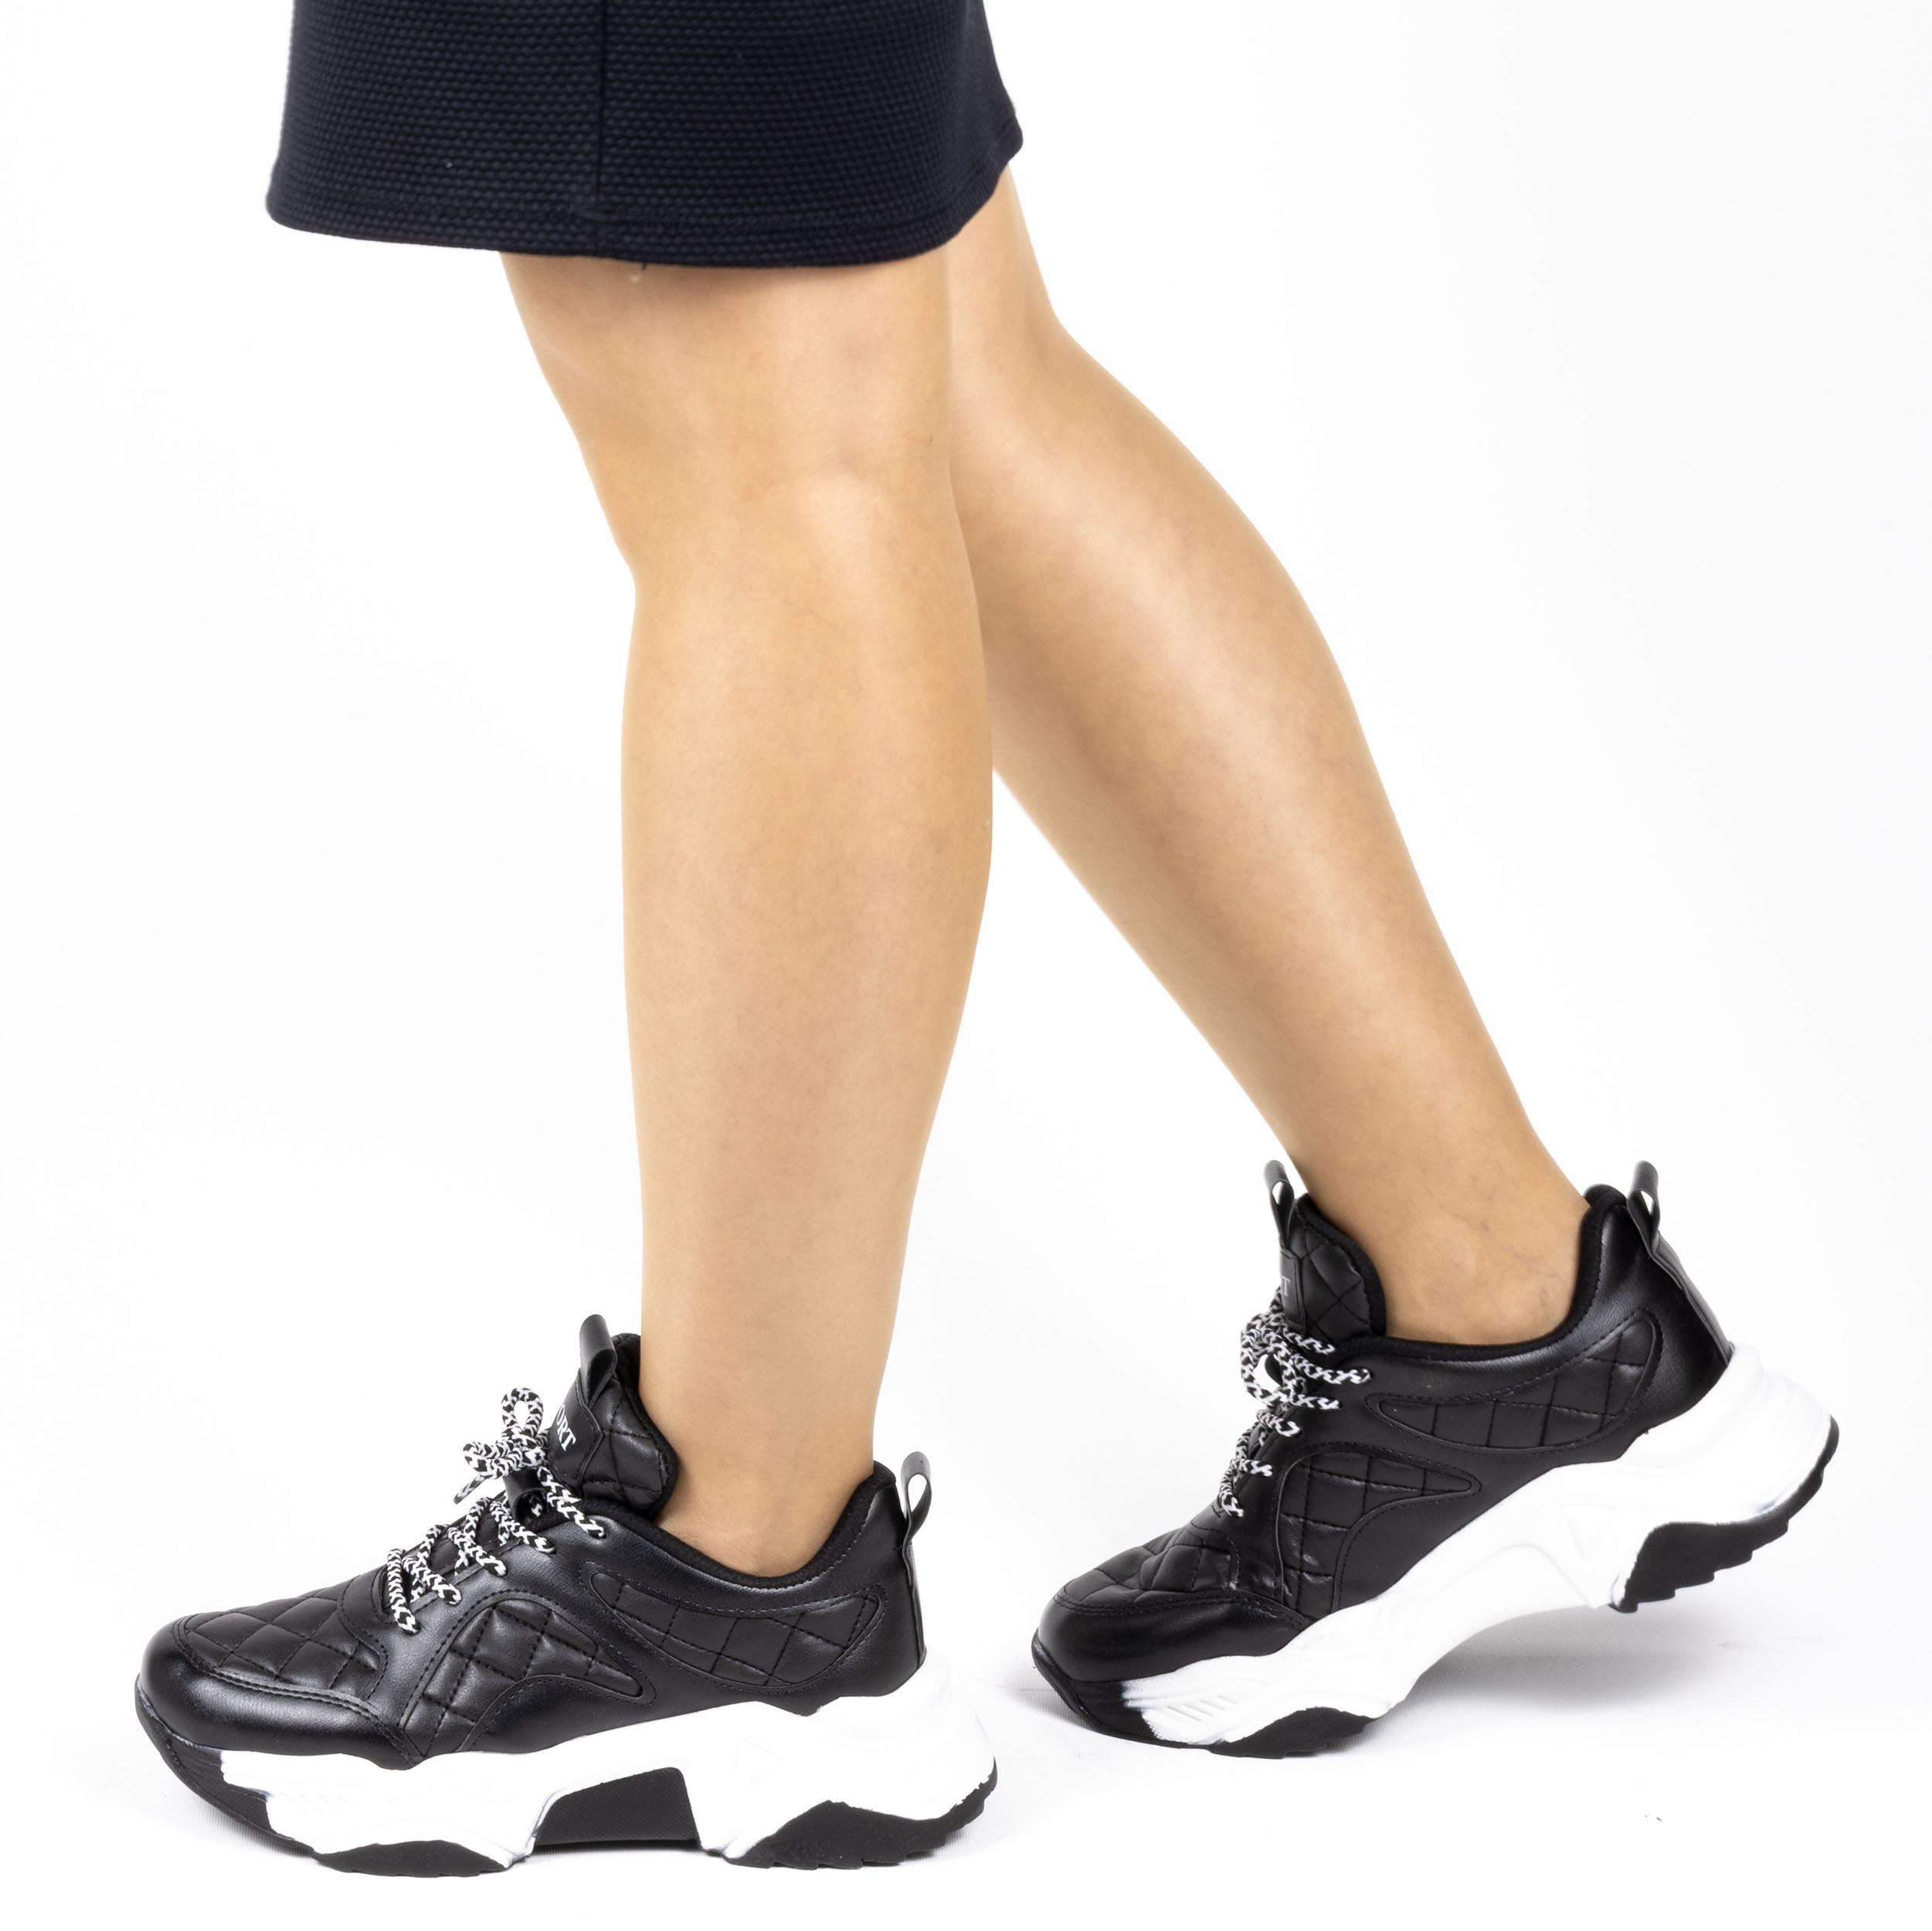 Kadın Günlük Siyah Kapitone Detaylı Kalın Tabanlı 5 Cm Sneakers Spor Ayakkabı, Renk: Siyah, Beden: 38